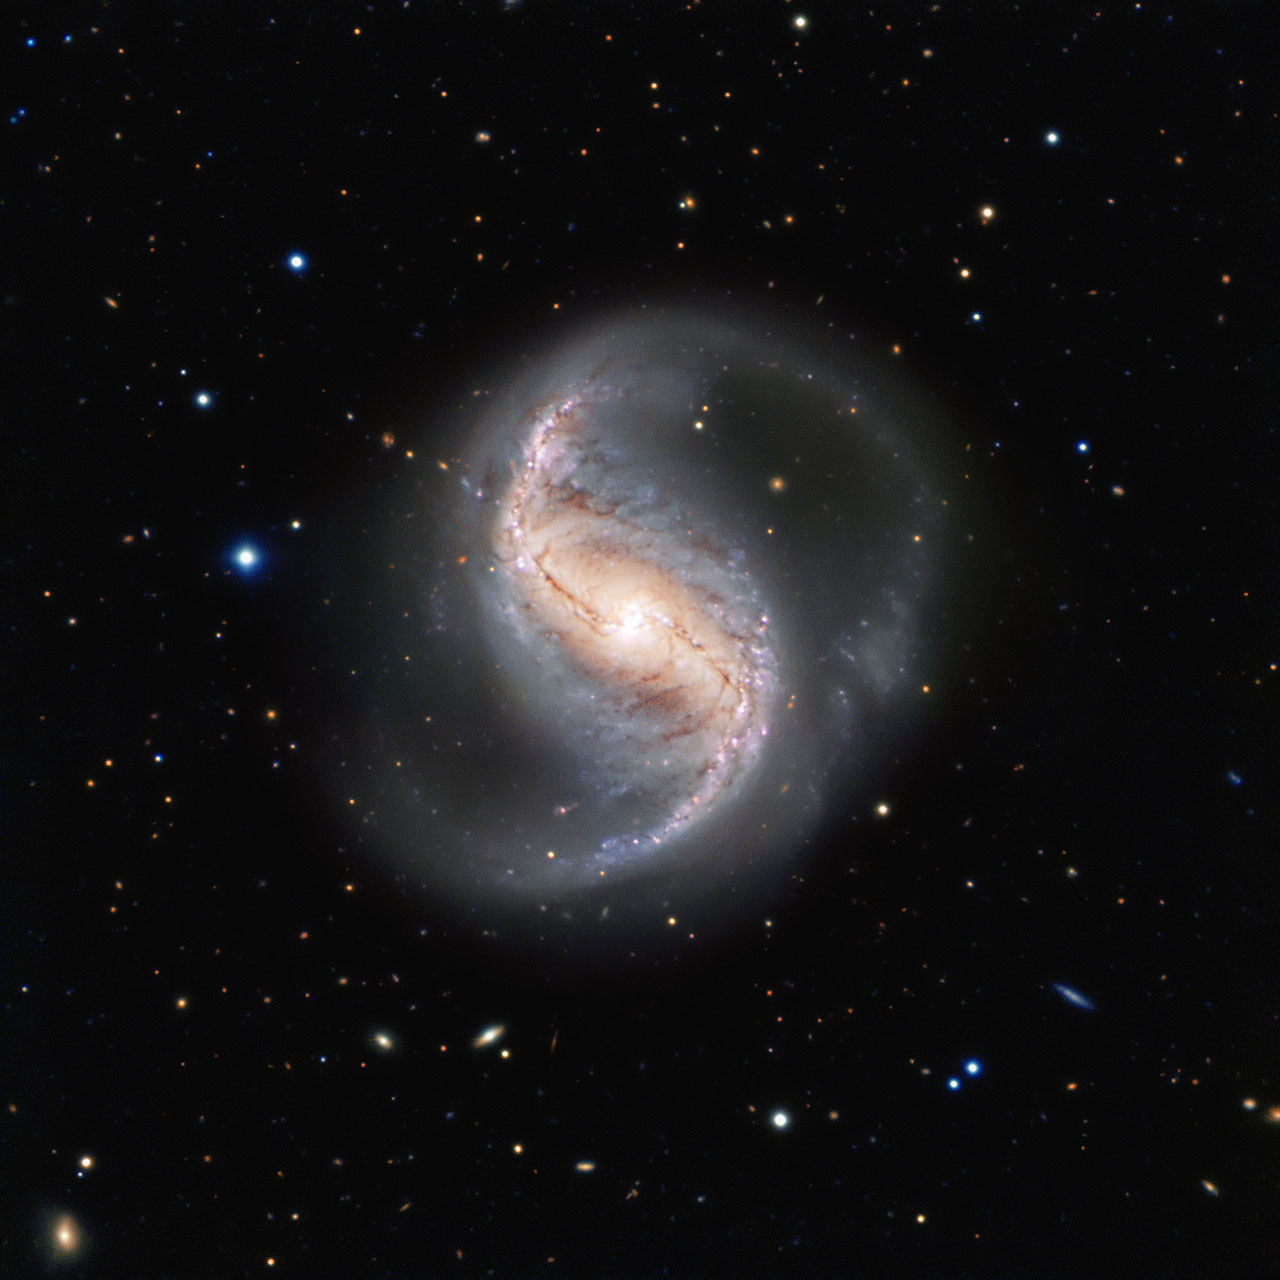 spiral-galaxy-ngc-986.jpg